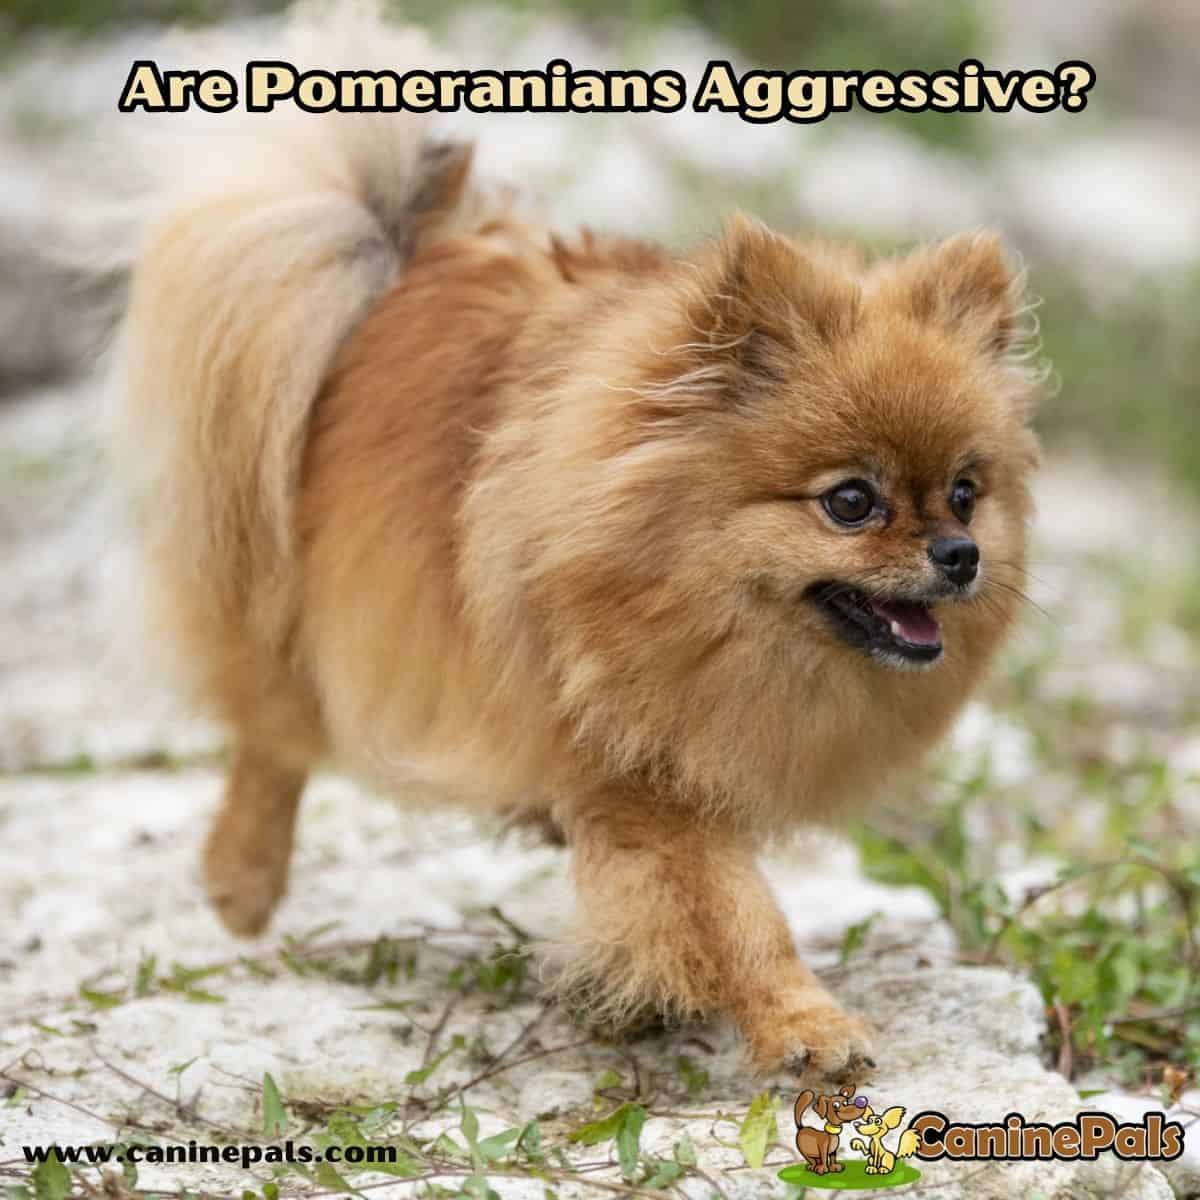 Are Pomeranians Aggressive?